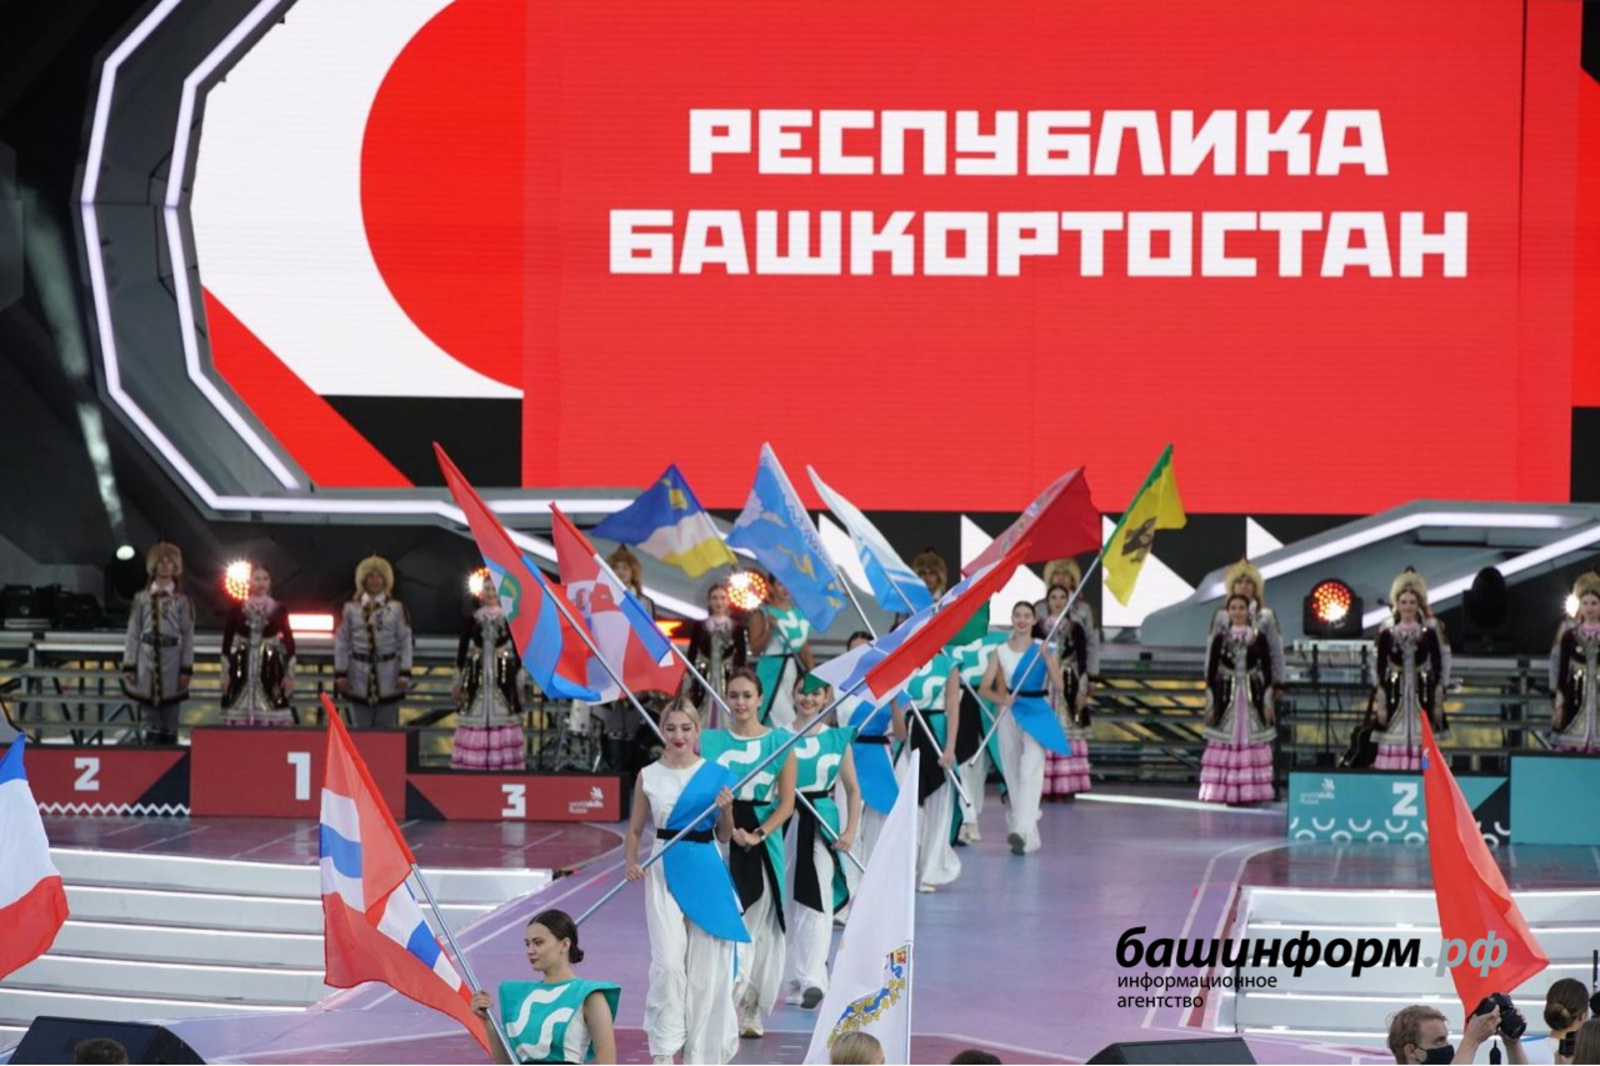 Определены победители и призеры Worldskills Russia в Уфе в составе сборной Башкирии